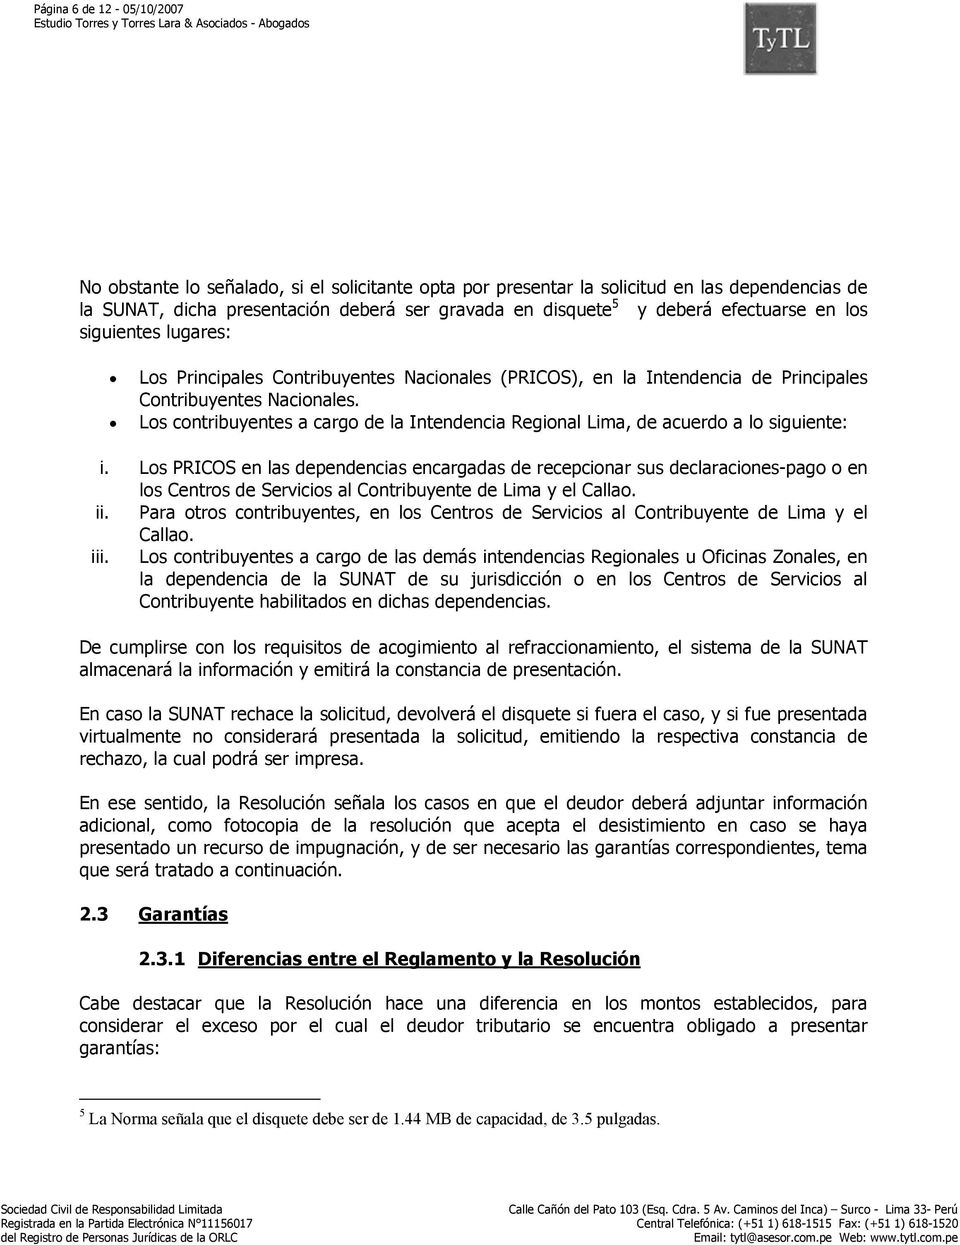 Los contribuyentes a cargo de la Intendencia Regional Lima, de acuerdo a lo siguiente: i.